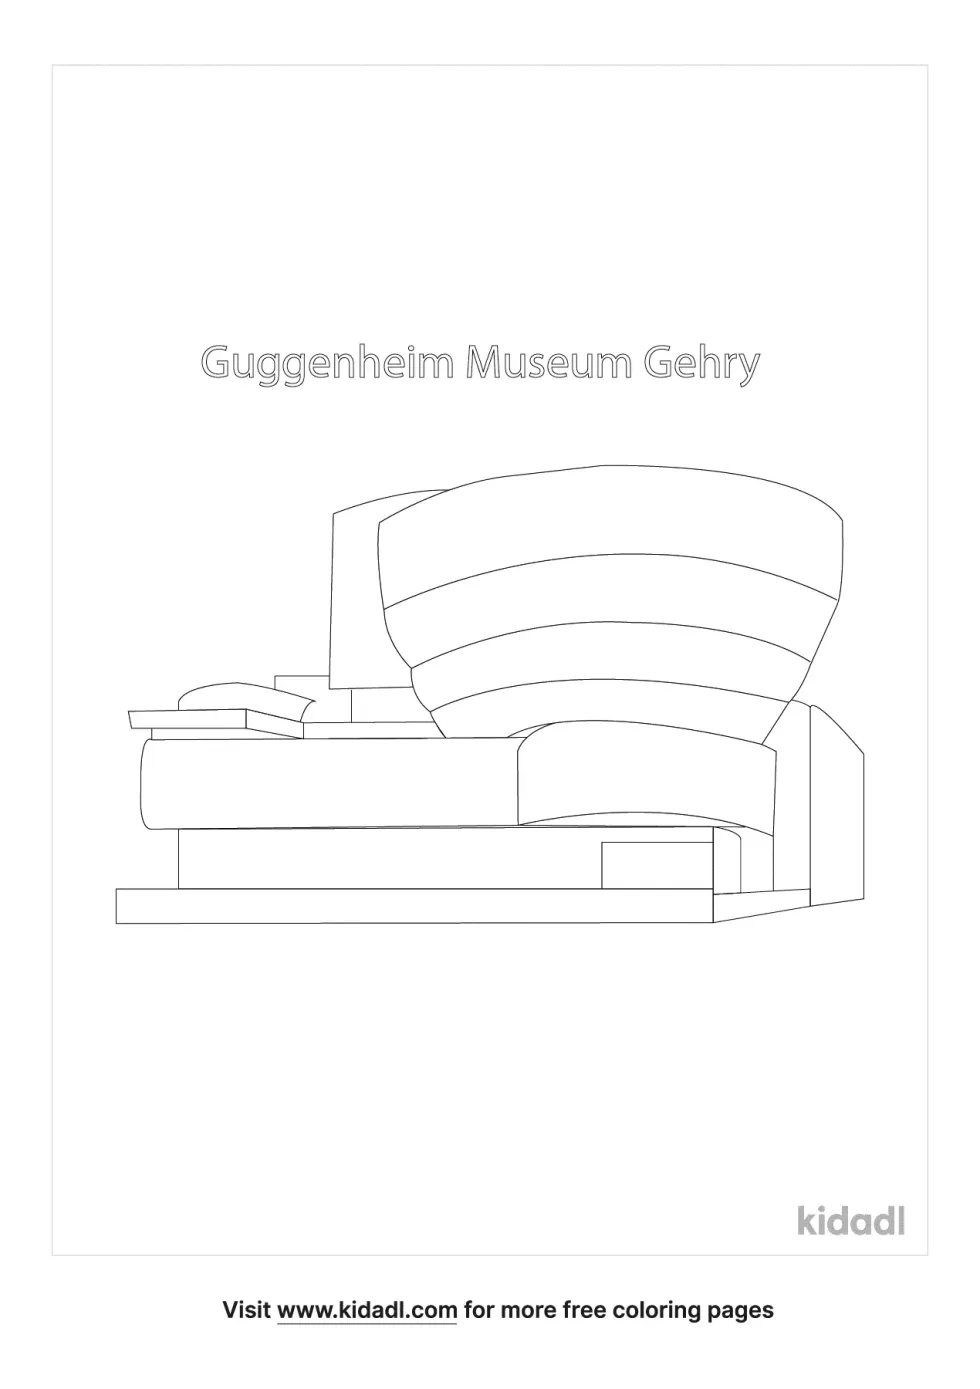 Guggenheim Museum Gehry